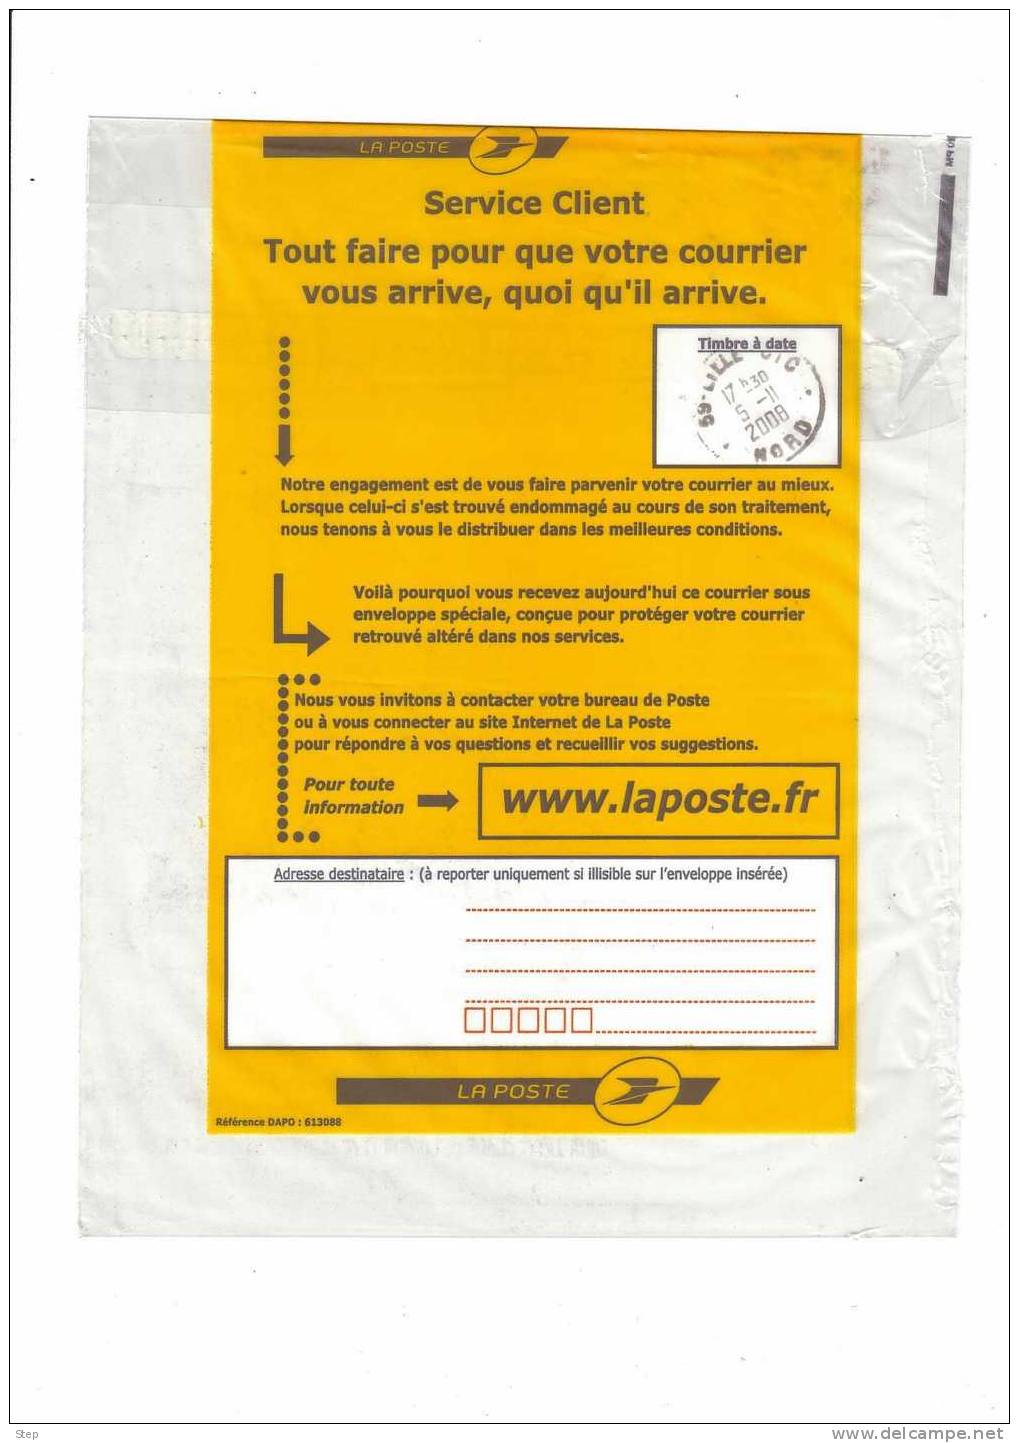 FRANCE : ENVELOPPE Spéciale En PLASTIQUE Pour Envoi De Courrier Altéré Dans Les Services Postaux - Unclassified